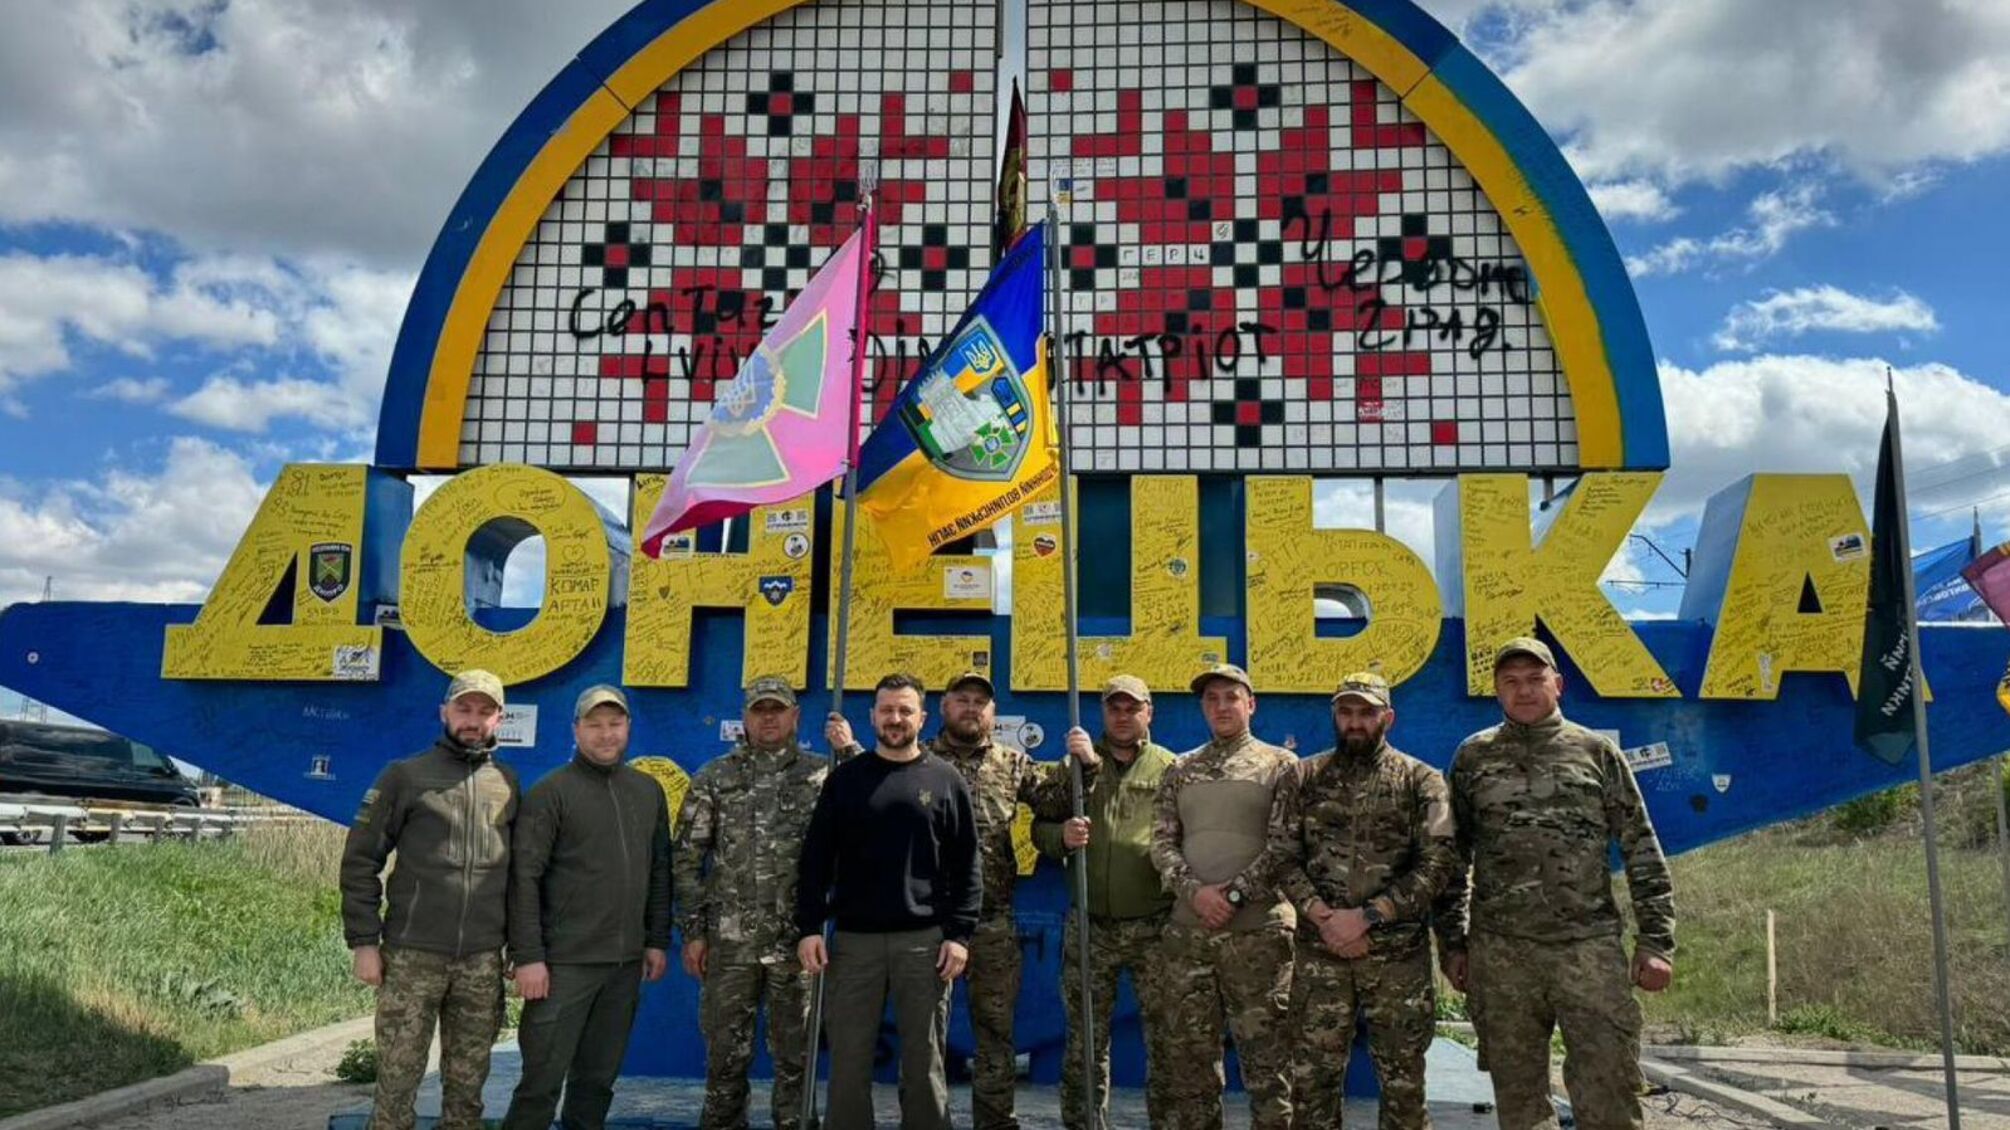 Владимир Зеленский посетил Донбасс и оставил свою подпись на потолке при въезде в область